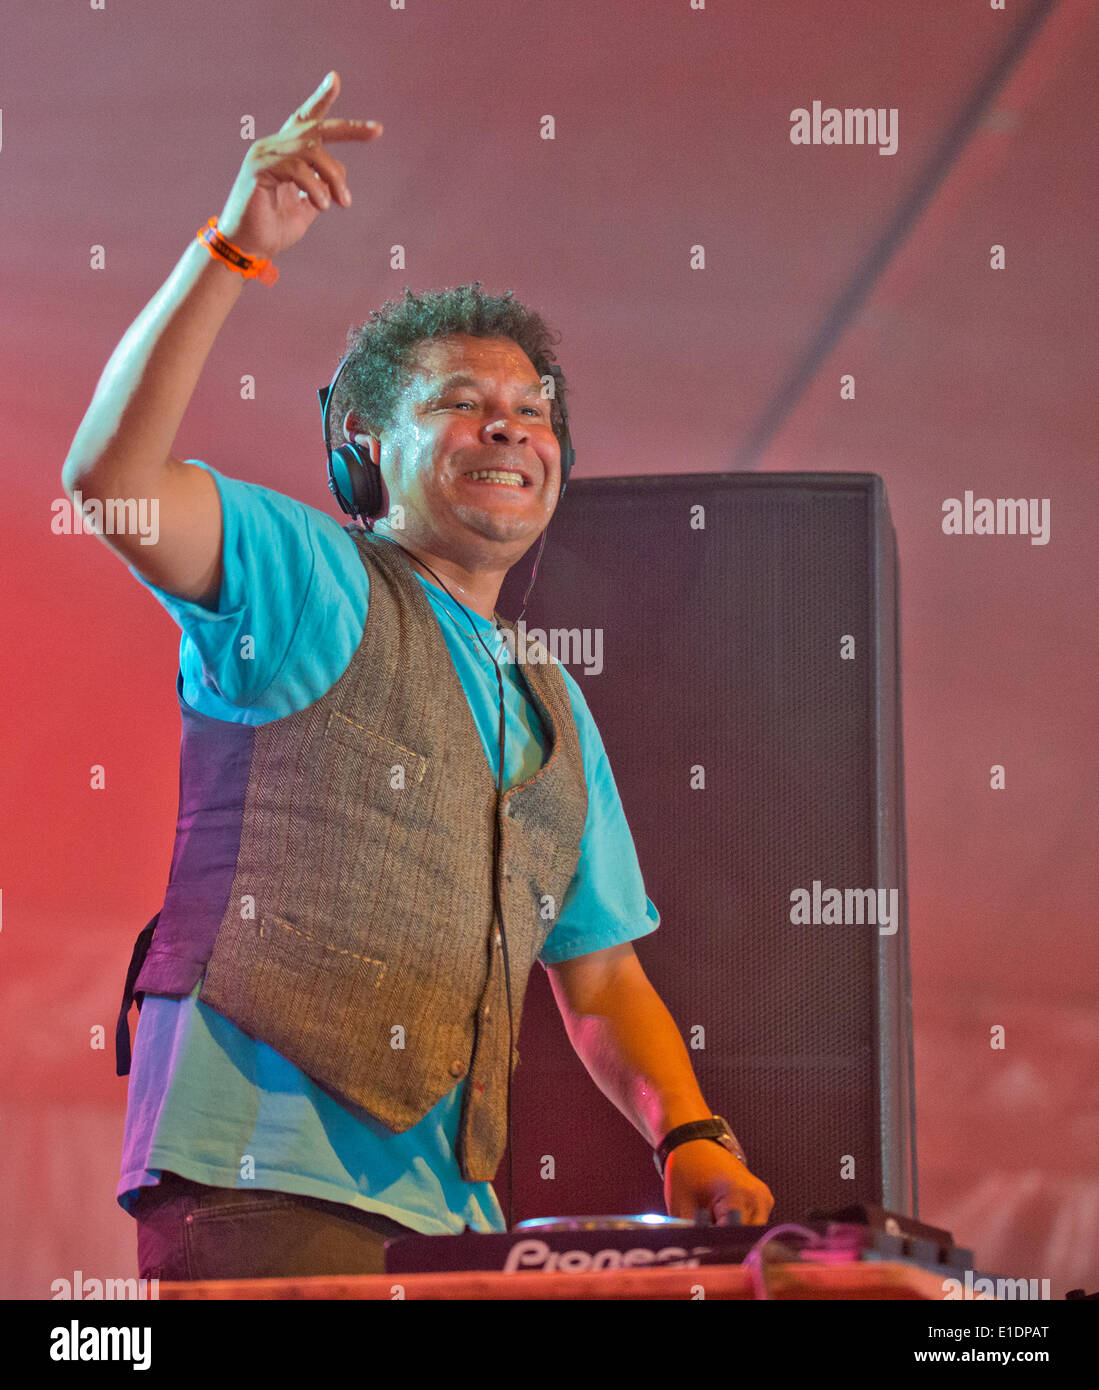 Wychwood Festival, Cheltenham, UK. 01 Juin, 2014. Craig Charles DJs dans le Chapiteau au 10ème Festival de Cheltenham UK Wychwood Crédit : charlie bryan/Alamy Live News Banque D'Images